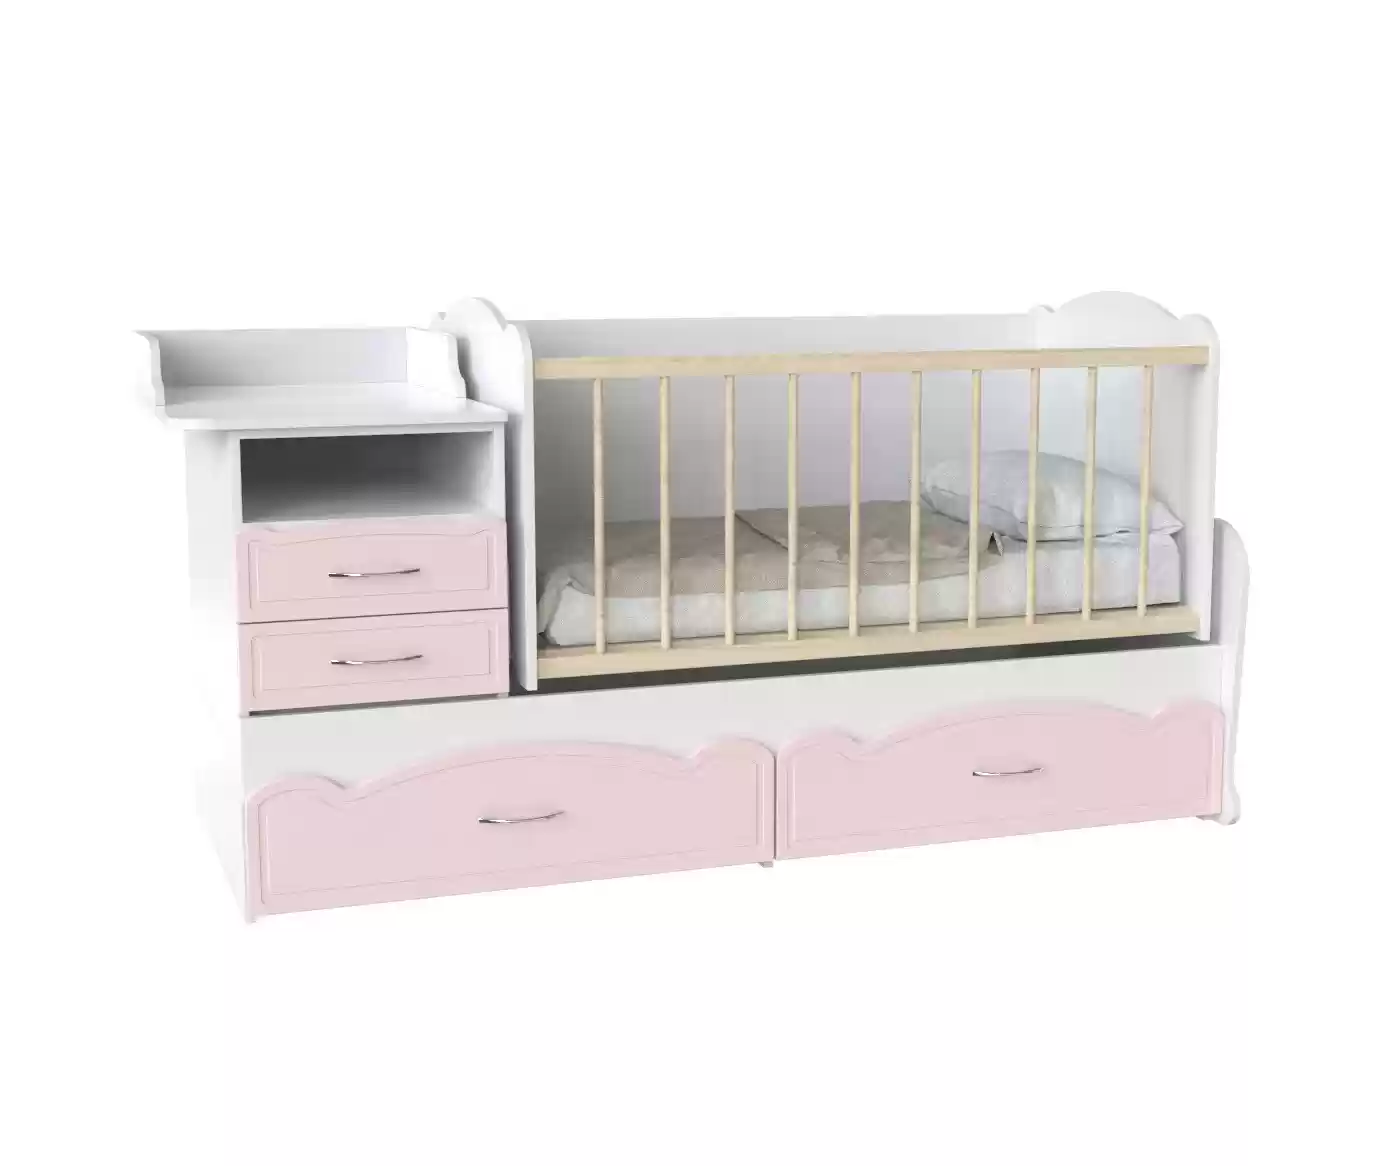 Дитяче ліжко Binky DS043 (3 в 1) аляска/рожевий (МДФ)